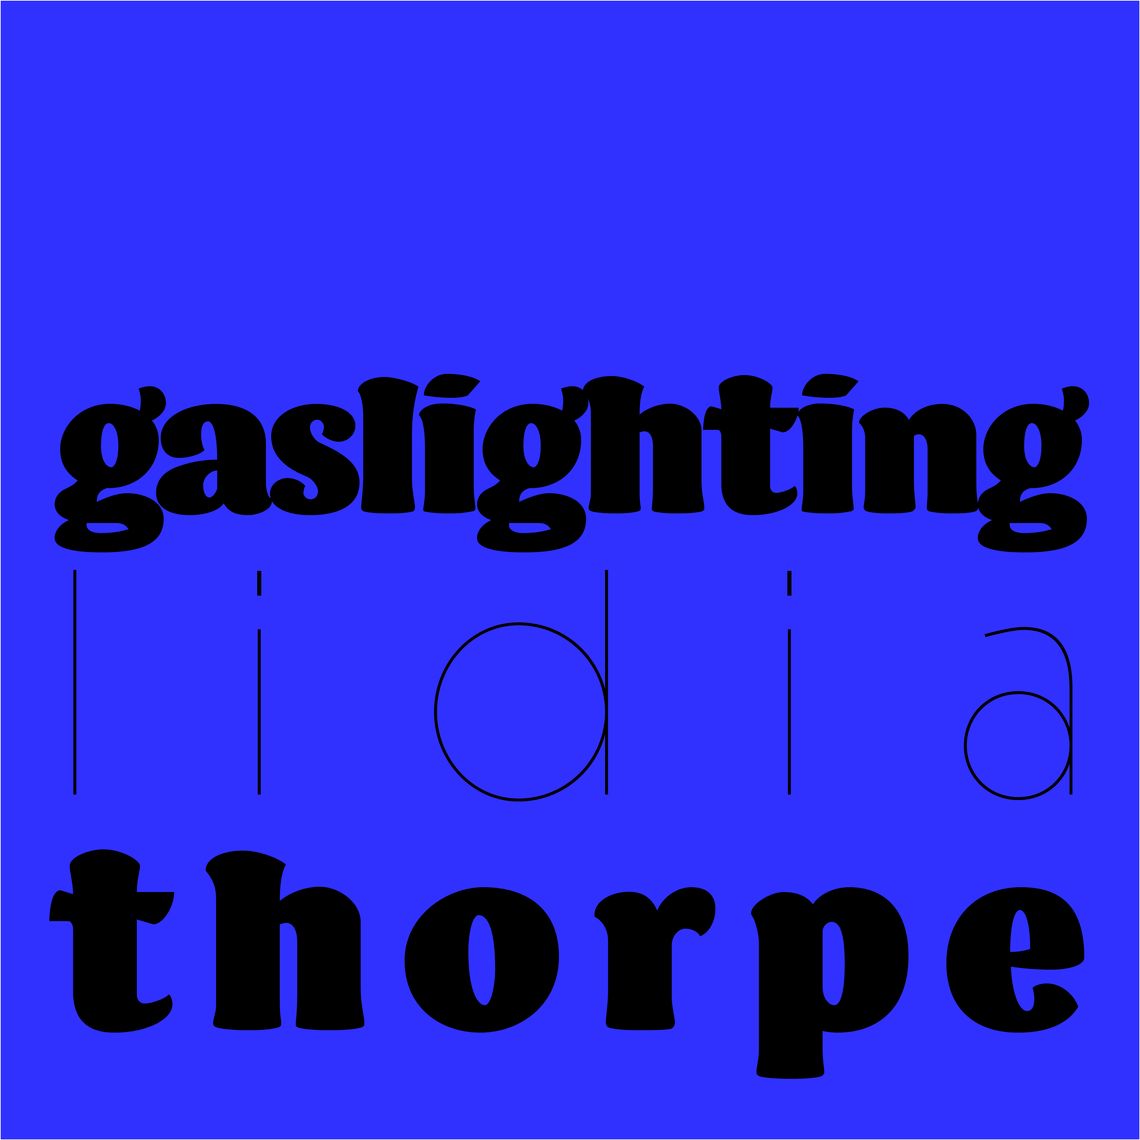 Gaslighting Lidia Thorpe